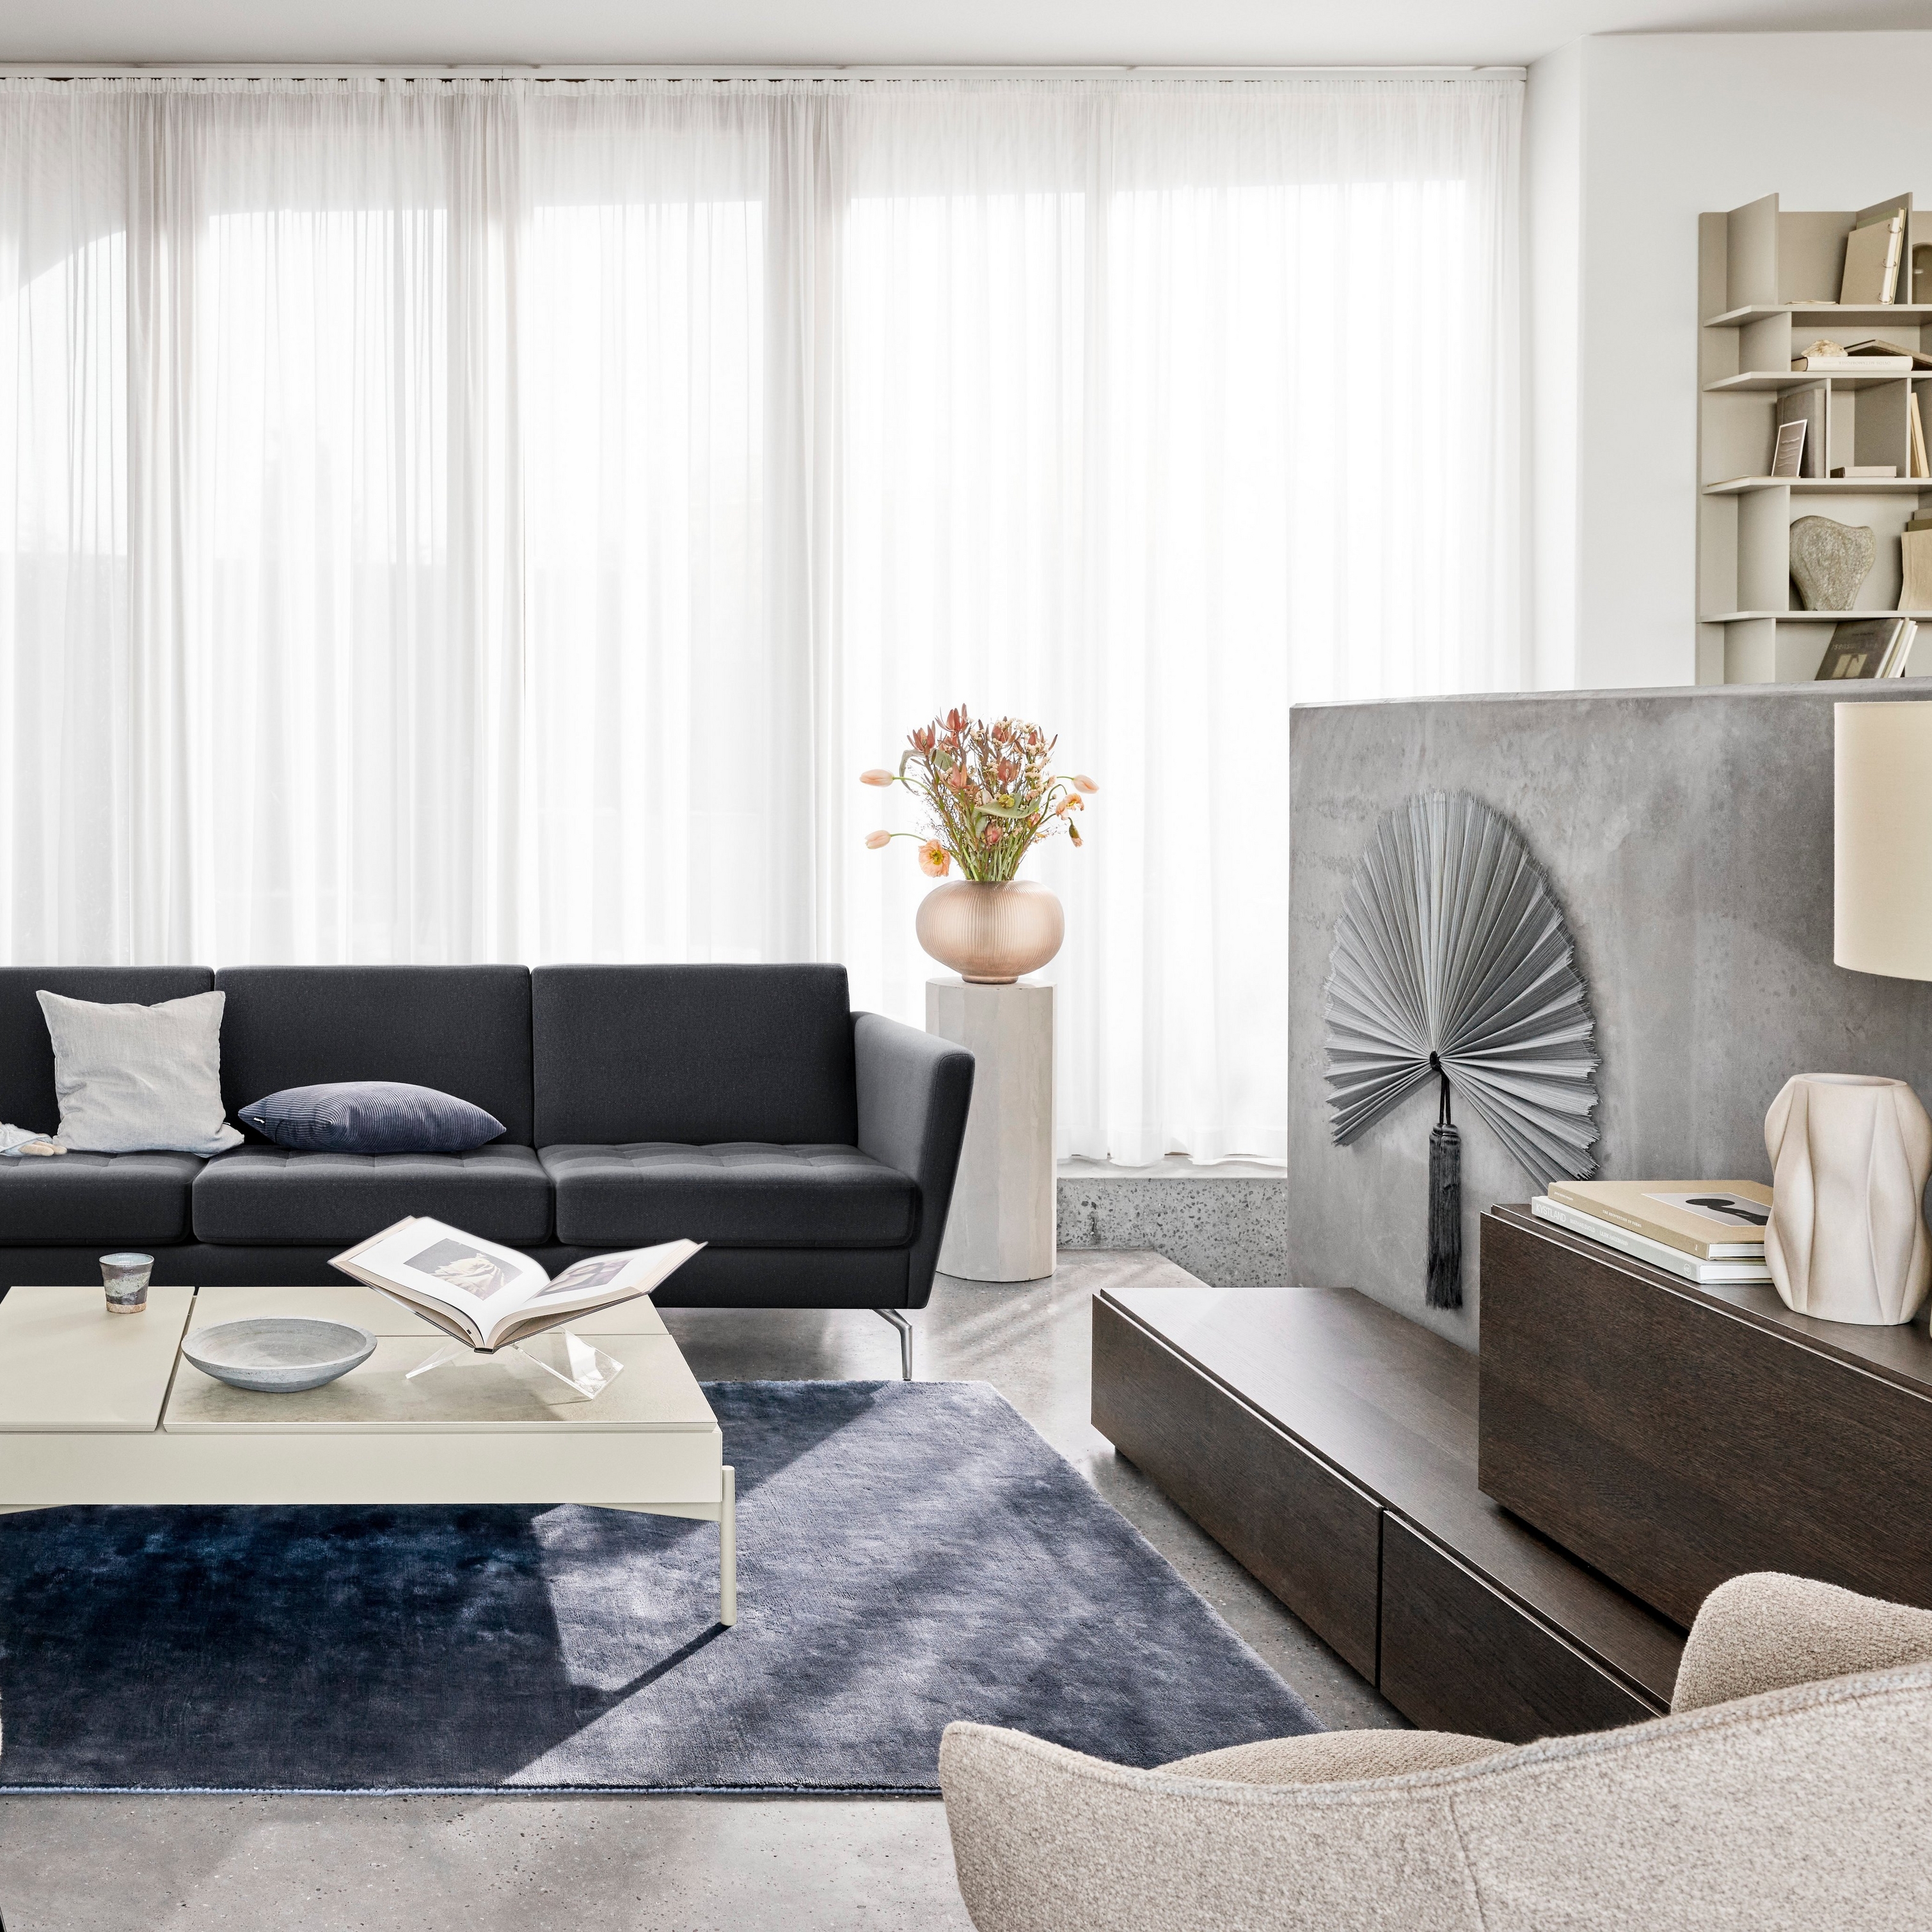 Un salon moderne avec un canapé noir, des chaises, des rideaux transparents et des éléments décoratifs.